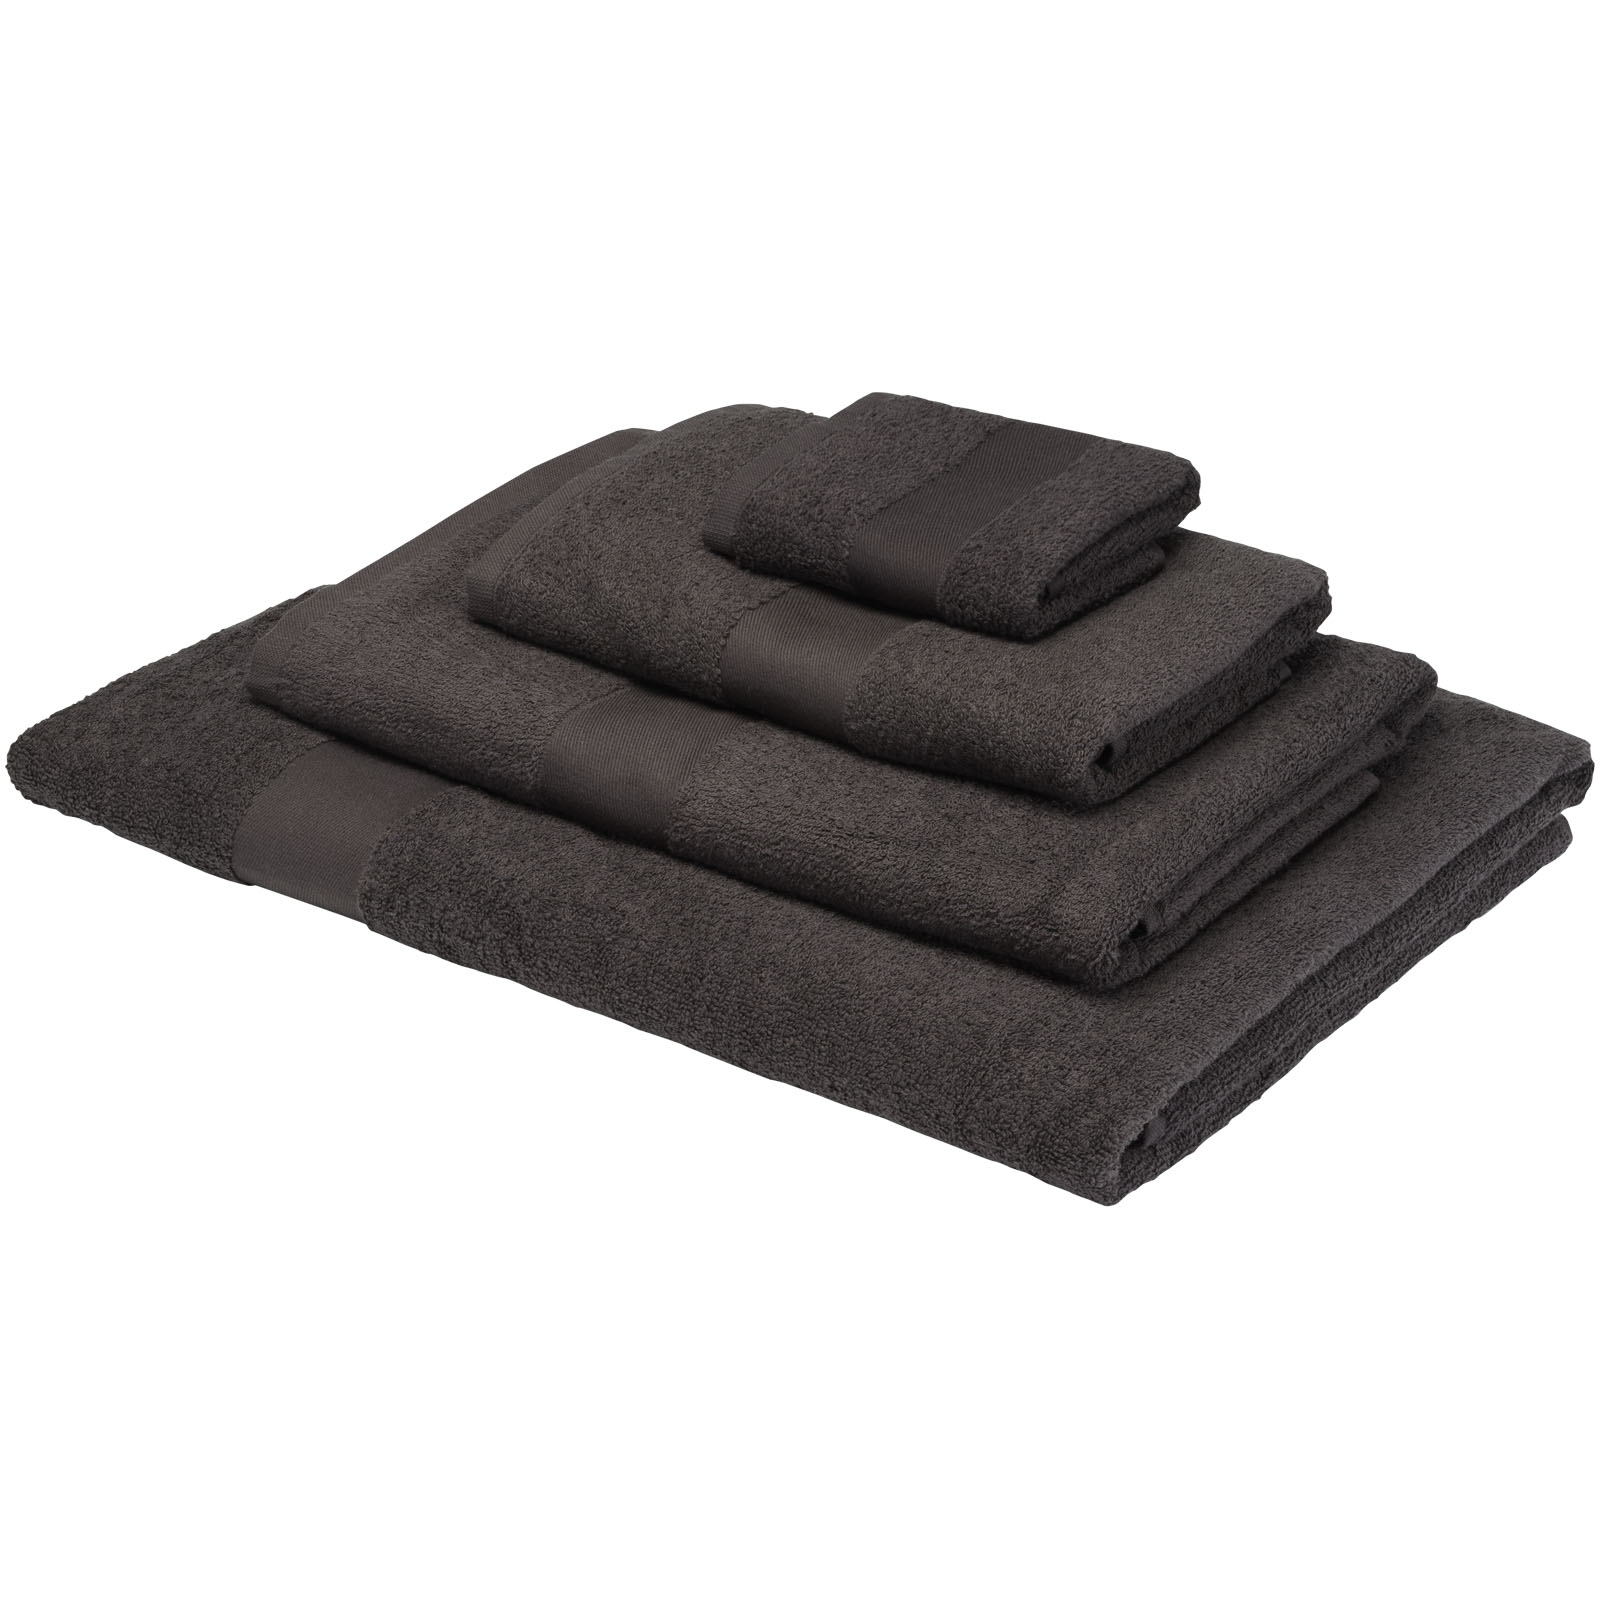 Advertising Towels - Amelia 450 g/m² cotton towel 70x140 cm - 2